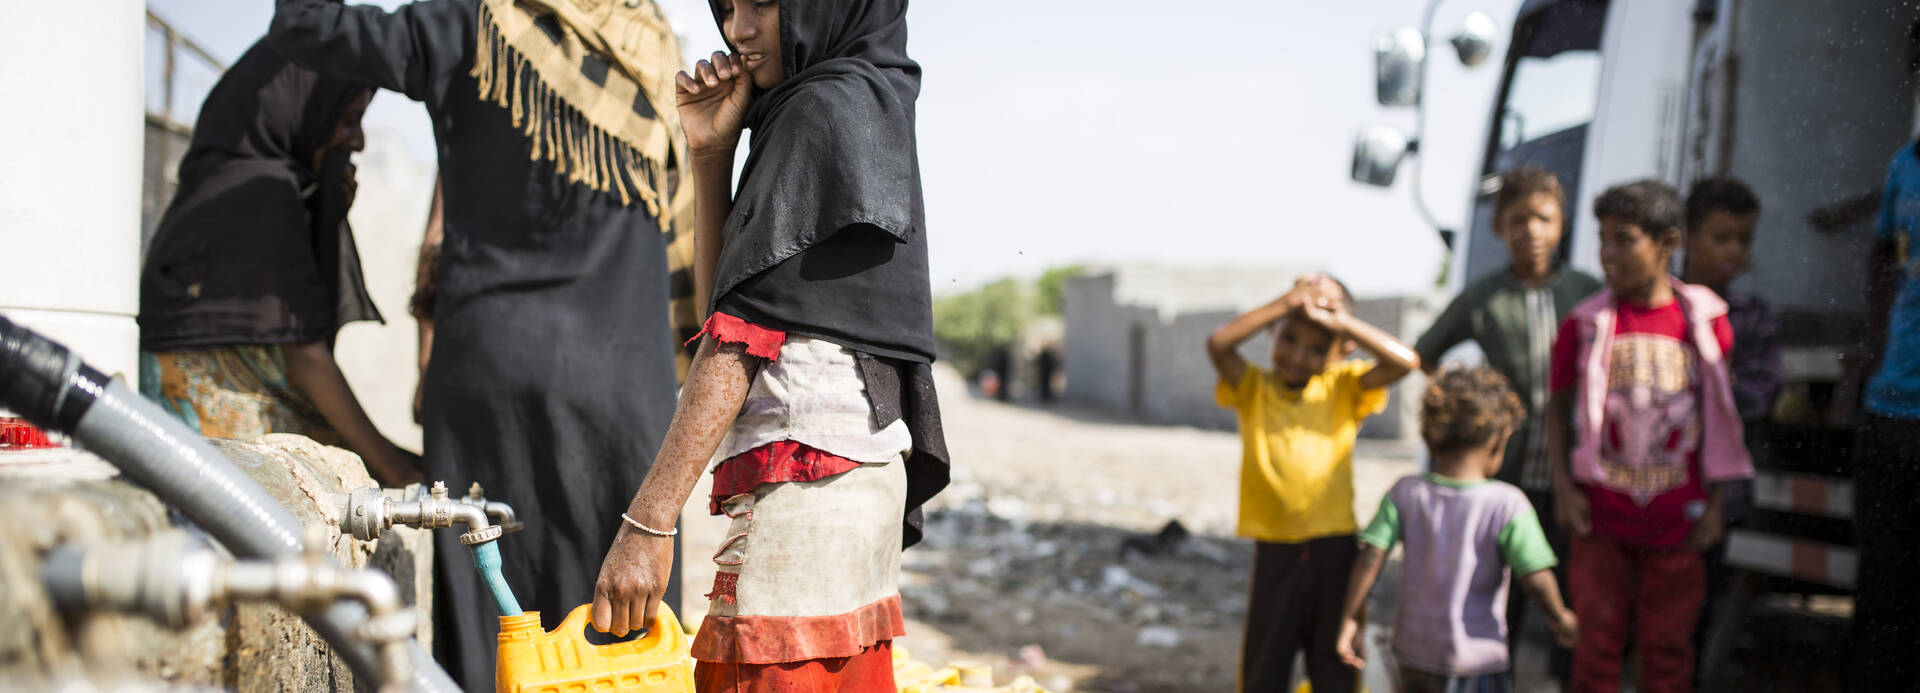 Kinder aus dem Jemen holen Wasser